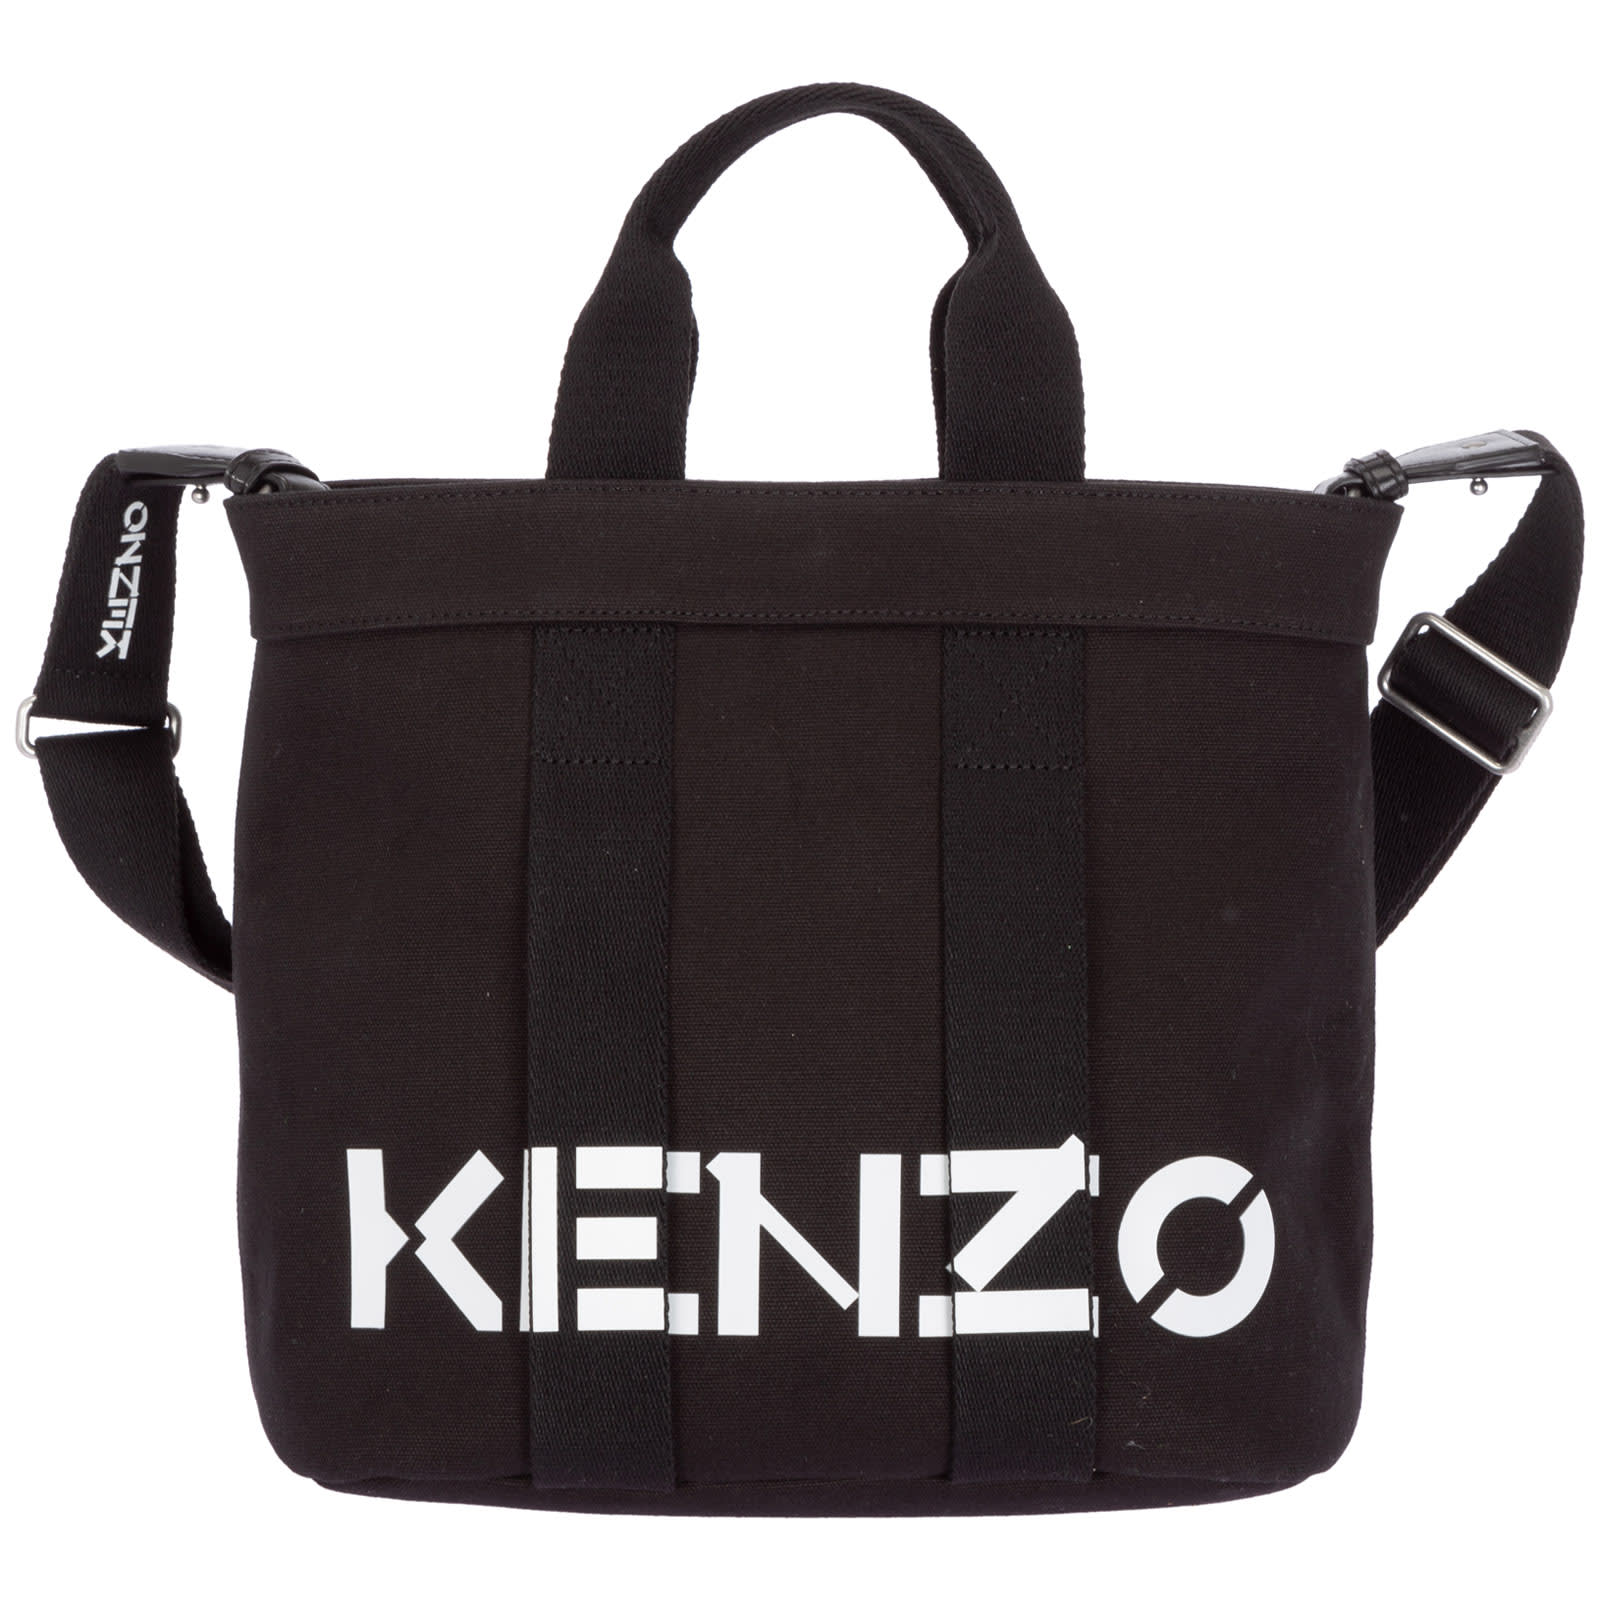 Kenzo Logo Handbags | Smart Closet